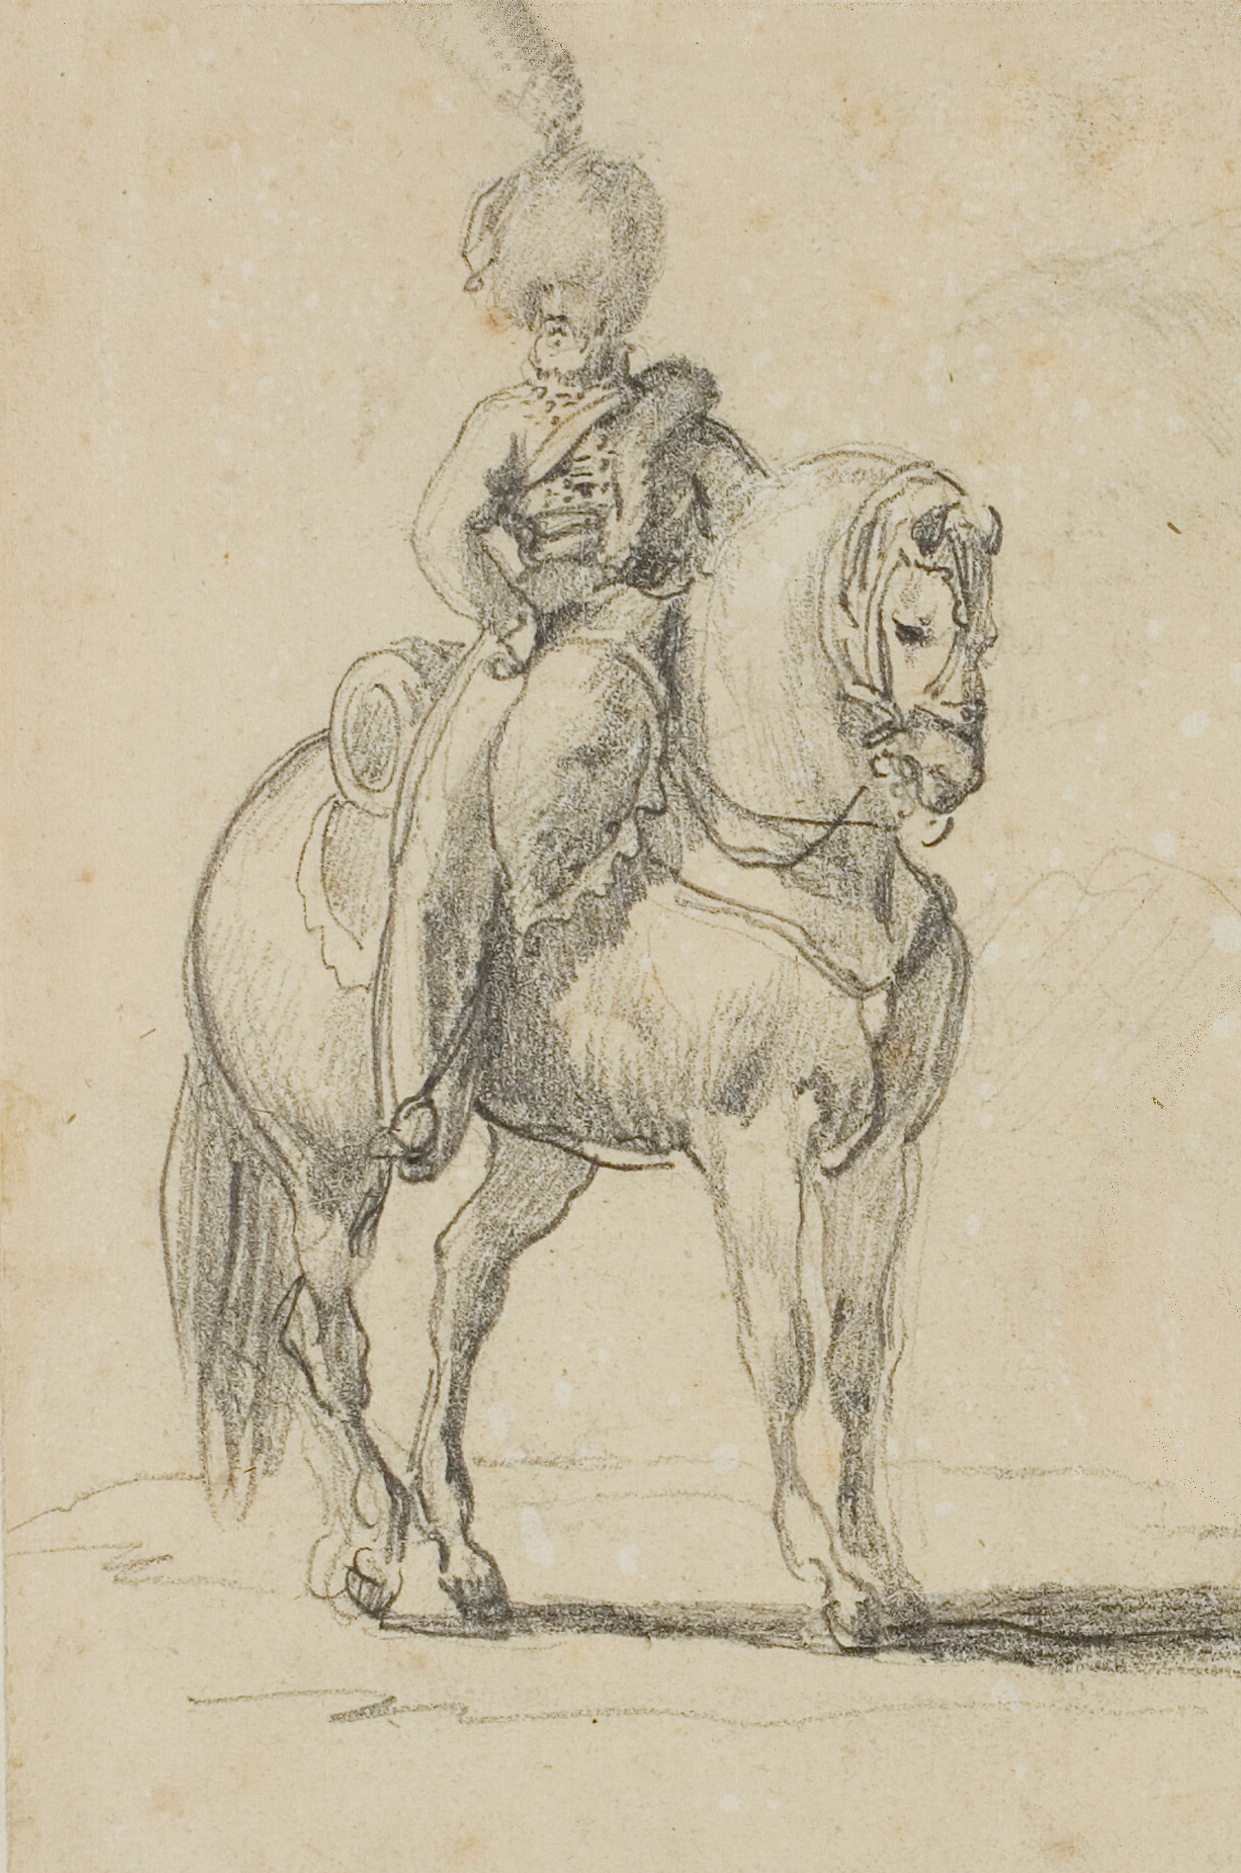 Reproduction dessin Théodore Géricault (1791-1824) 19e siècle